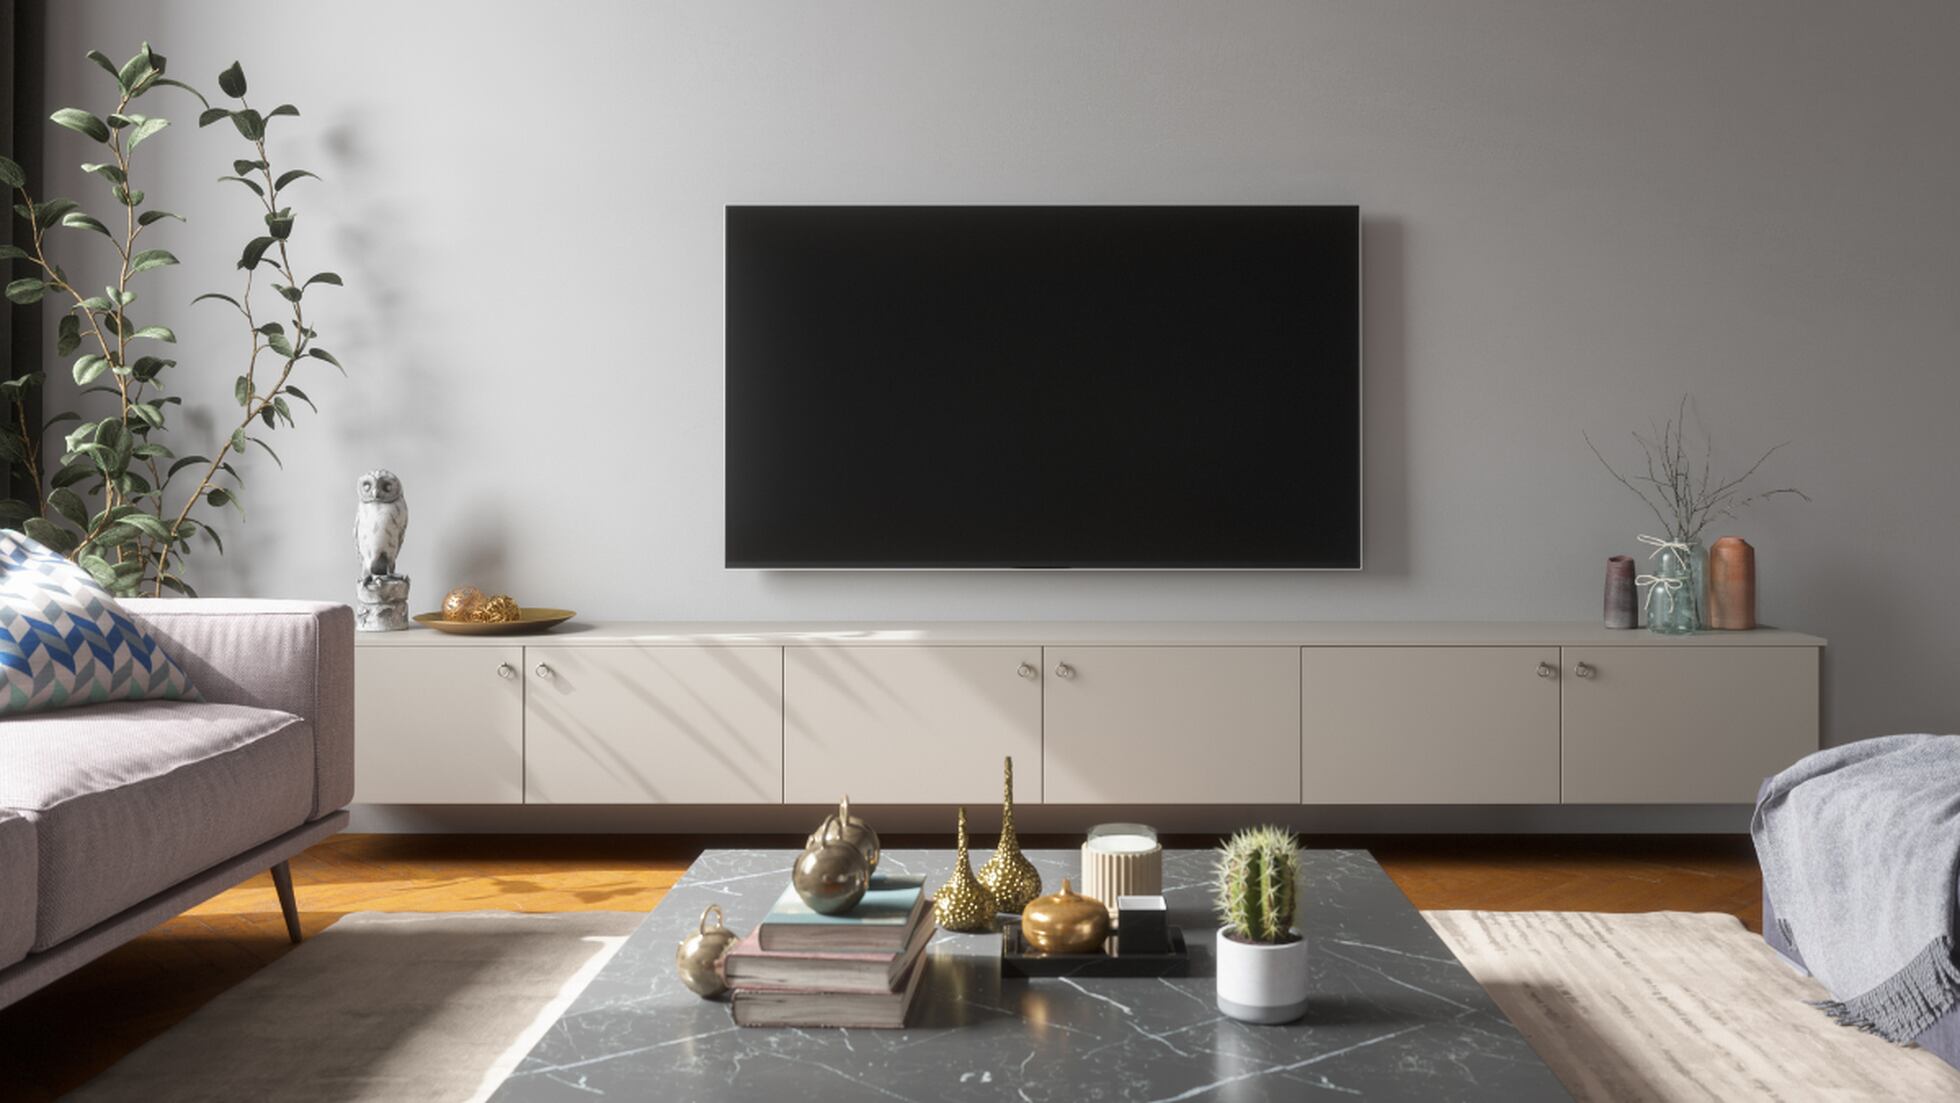 Cómo instalar una TV en la pared de forma sencilla?